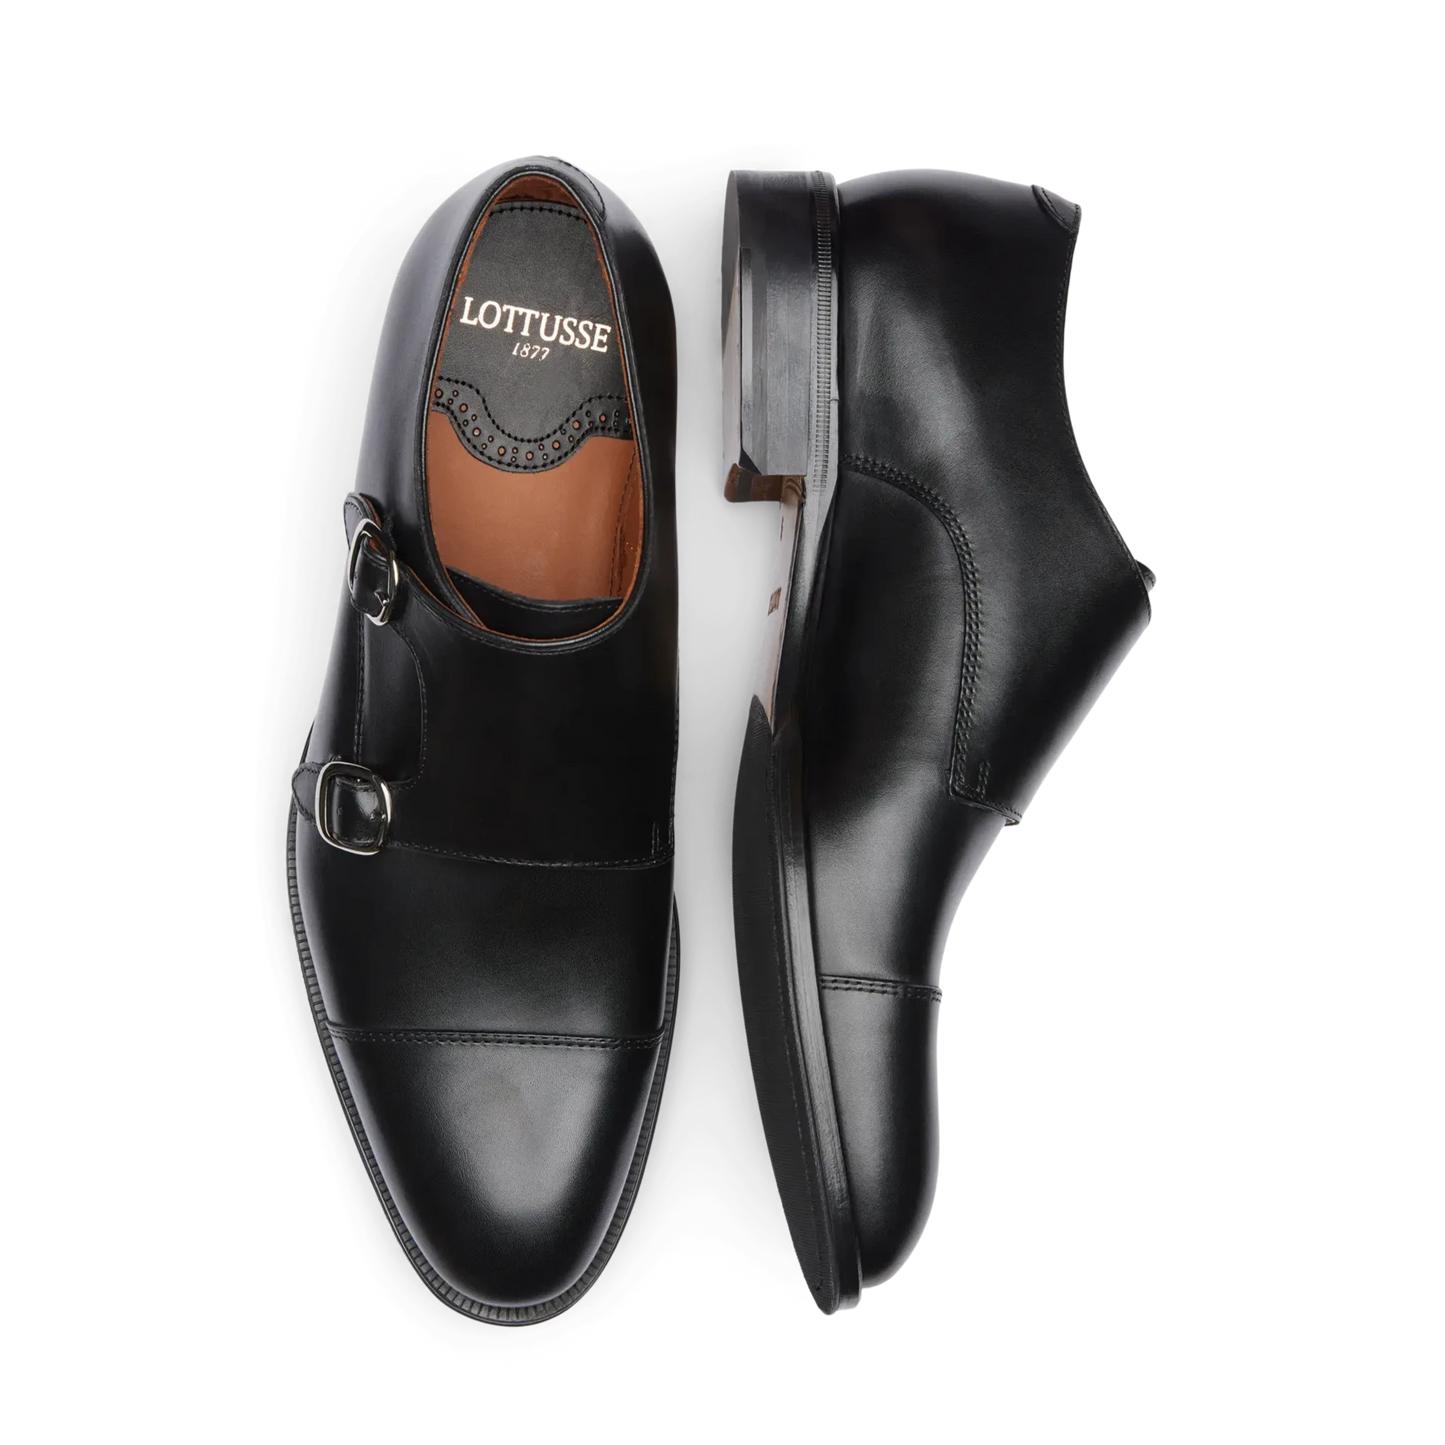 LOTTUSSE | أحذية مشبك مزدوجة للرجال | LENOX EBONY NEGRO SPAY NAT | أسود